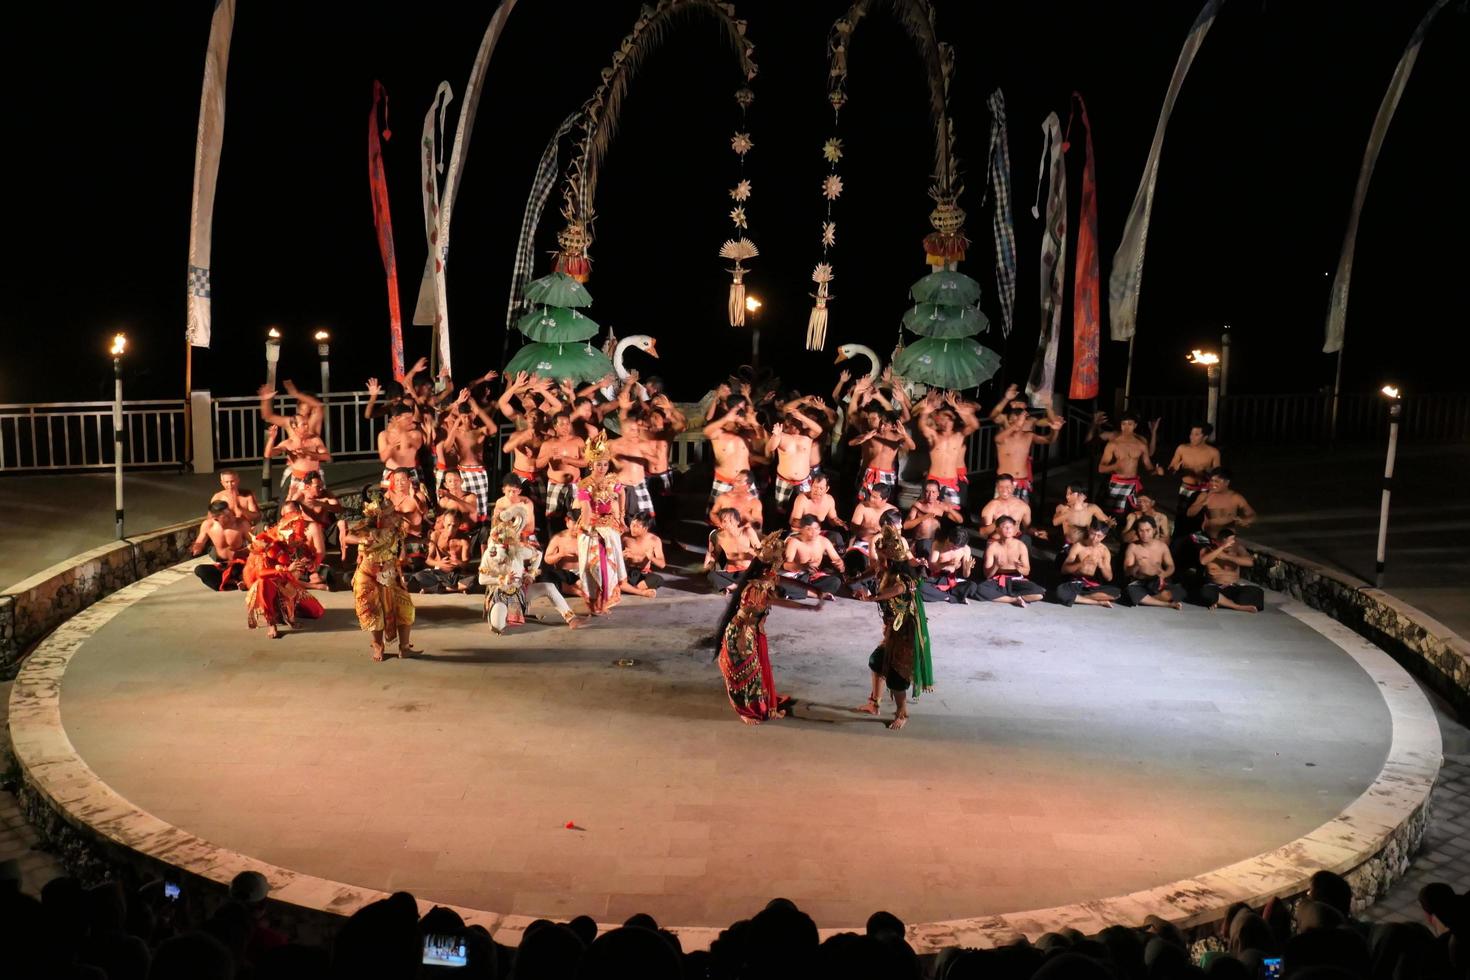 Espectáculo de danza kecak en la playa de melasti, bali, indonesia foto